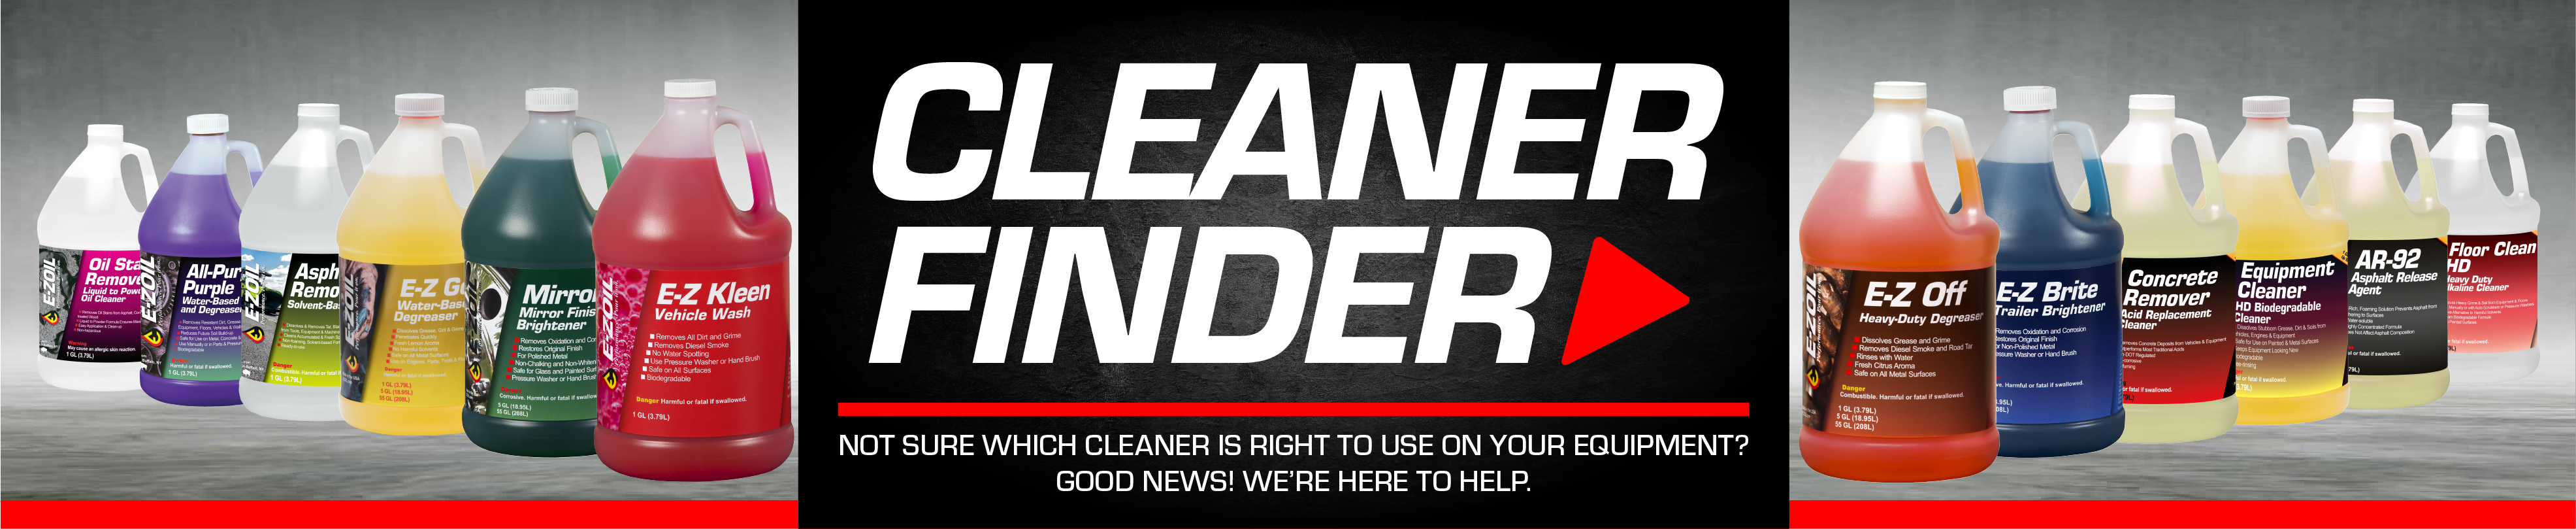 Cleaner Finder heading